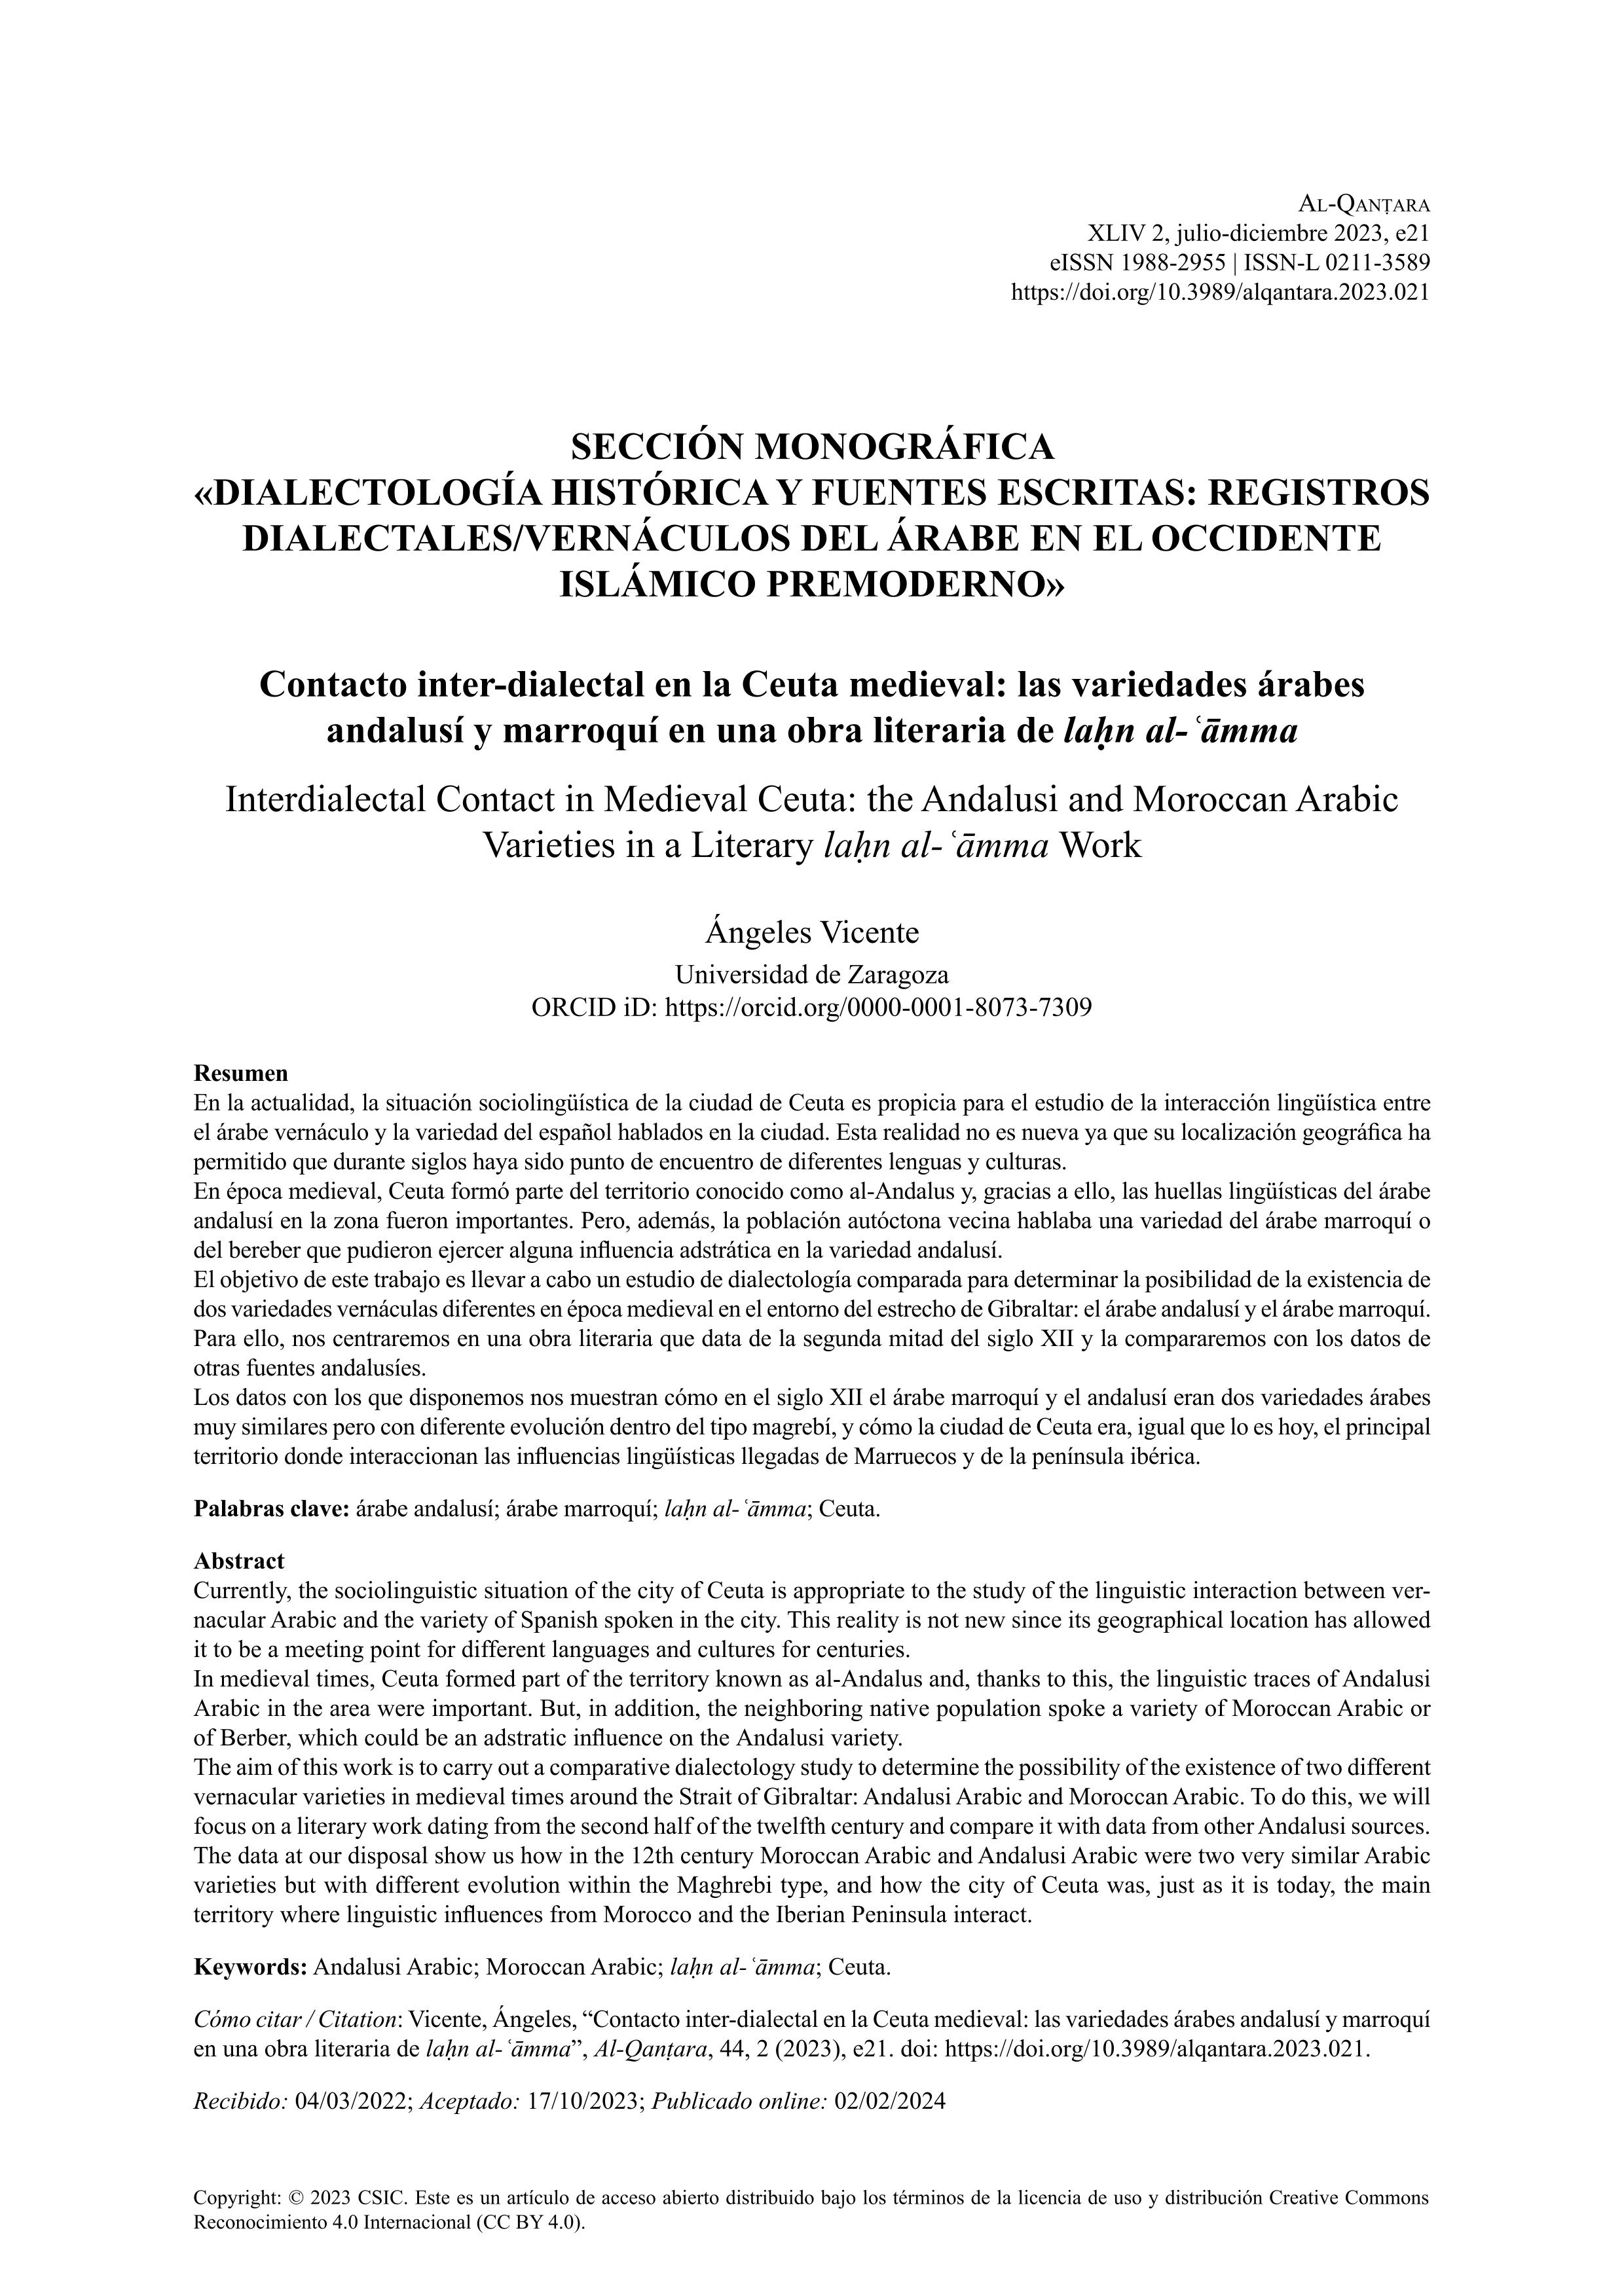 Contacto inter-dialectal en la Ceuta medieval: las variedades árabes andalusí y marroquí en una obra literaria de la¿n al-¿amma